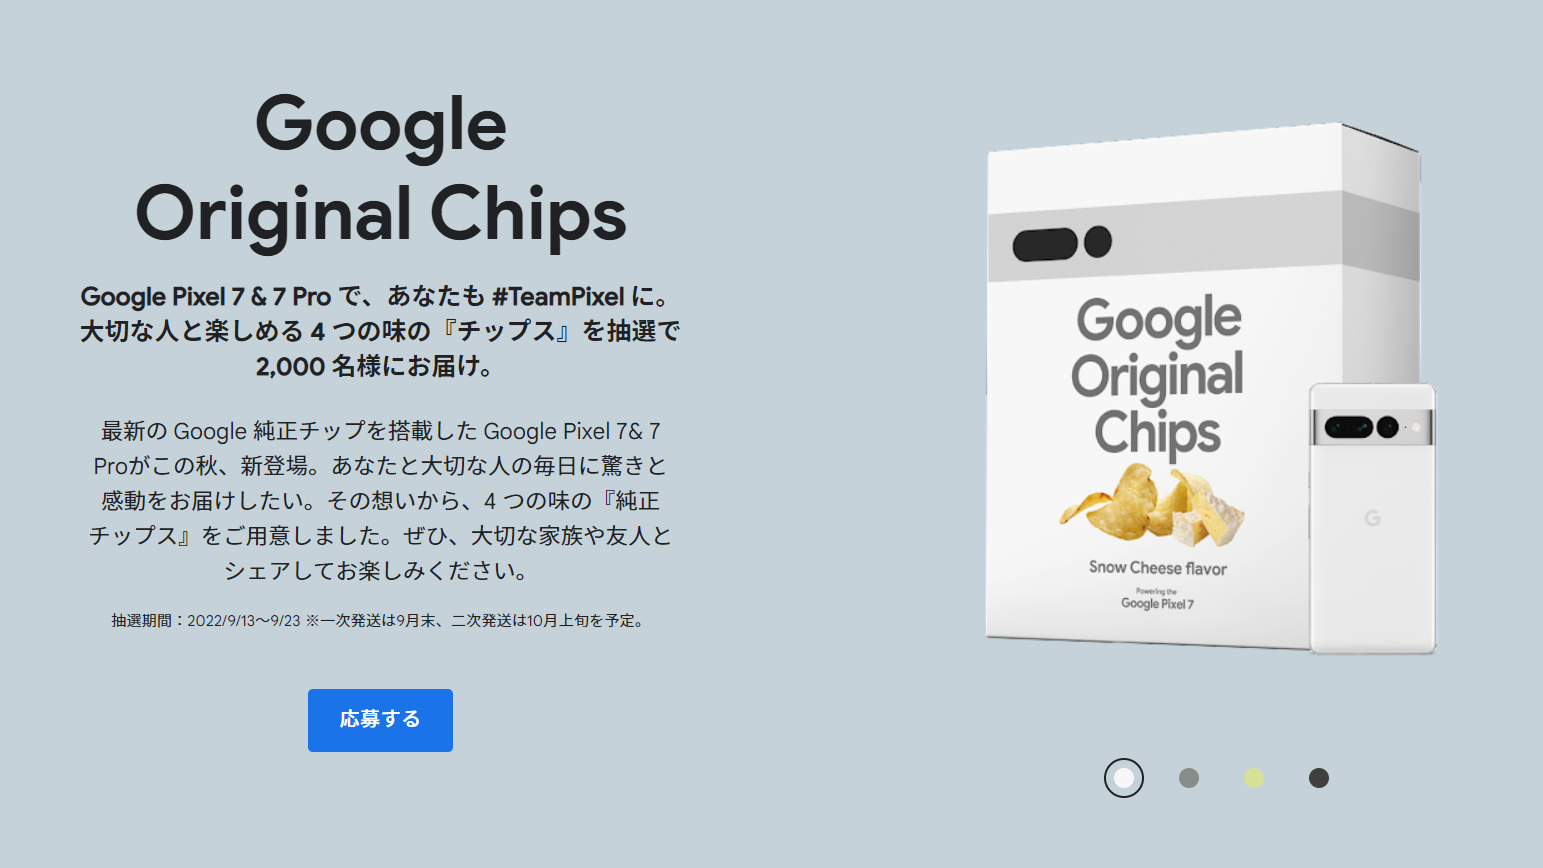 Цвета Google Pixel 7 Pro подтверждены в странном твите с картофельными чипсами